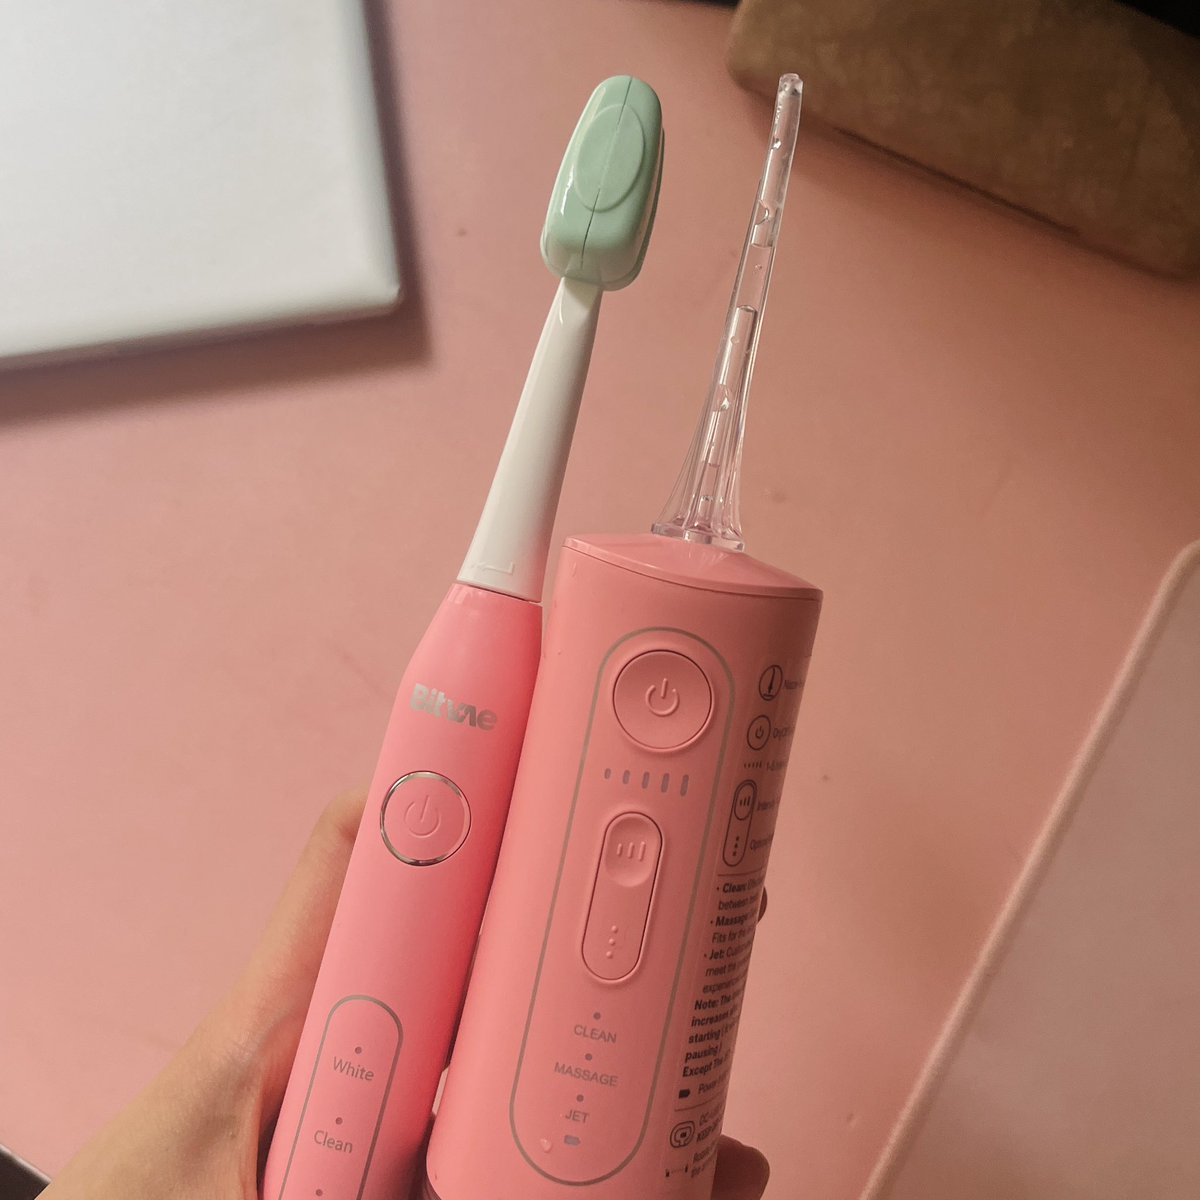 Recomendaciones no aesthetic:
Un cepillo eléctrico y un irrigador bucal van a cambiar la vida de tus dientes. De ahí no se vuelve. La diferencia es MUCHA.